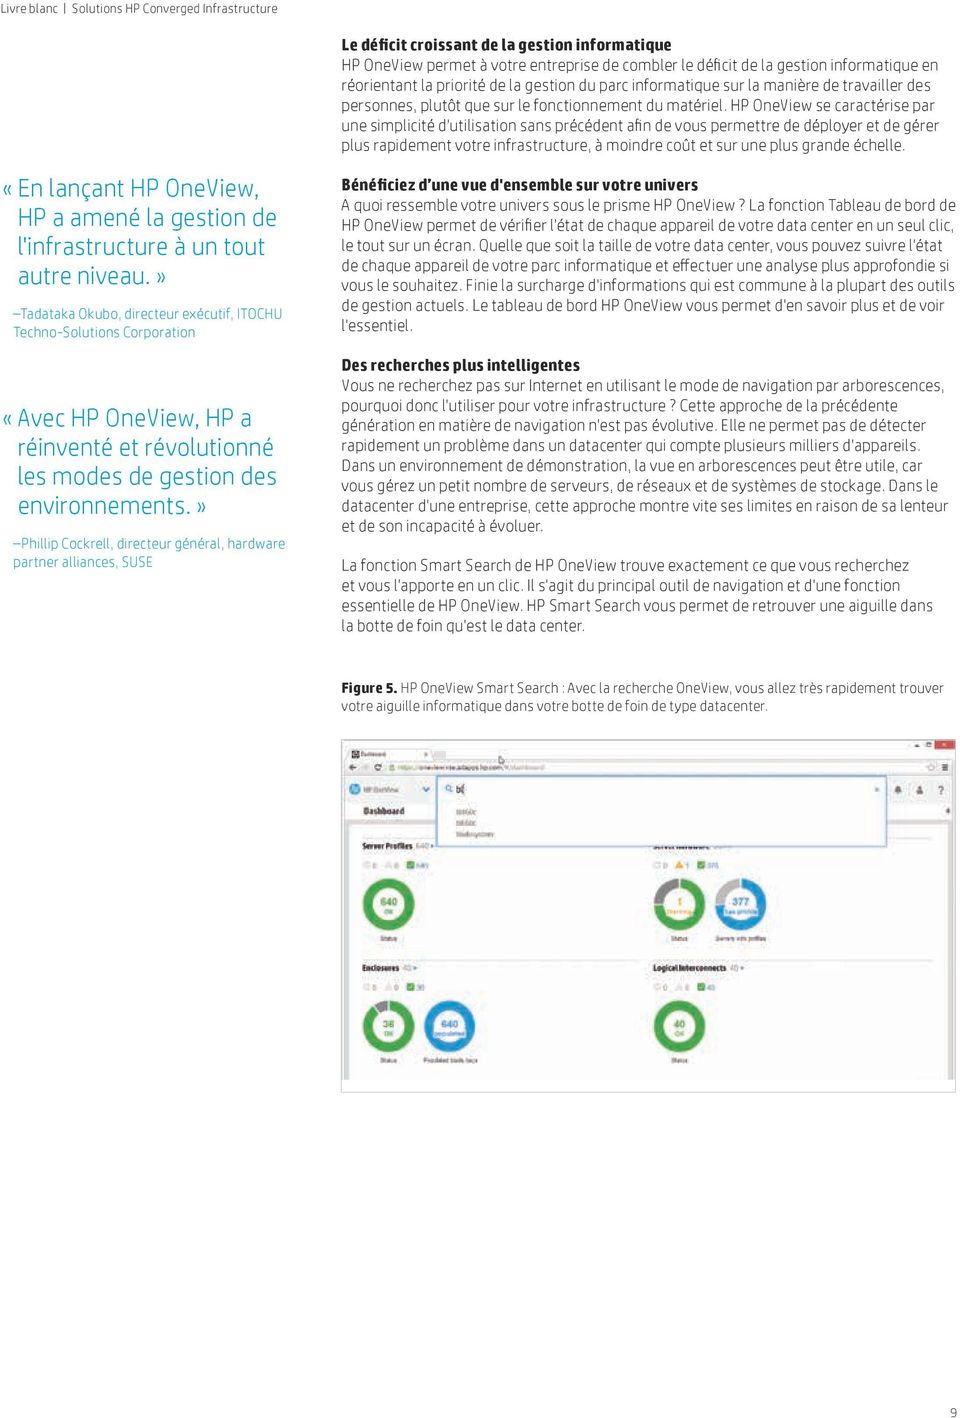 HP OneView se caractérise par une simplicité d'utilisation sans précédent afin de vous permettre de déployer et de gérer plus rapidement votre infrastructure, à moindre coût et sur une plus grande